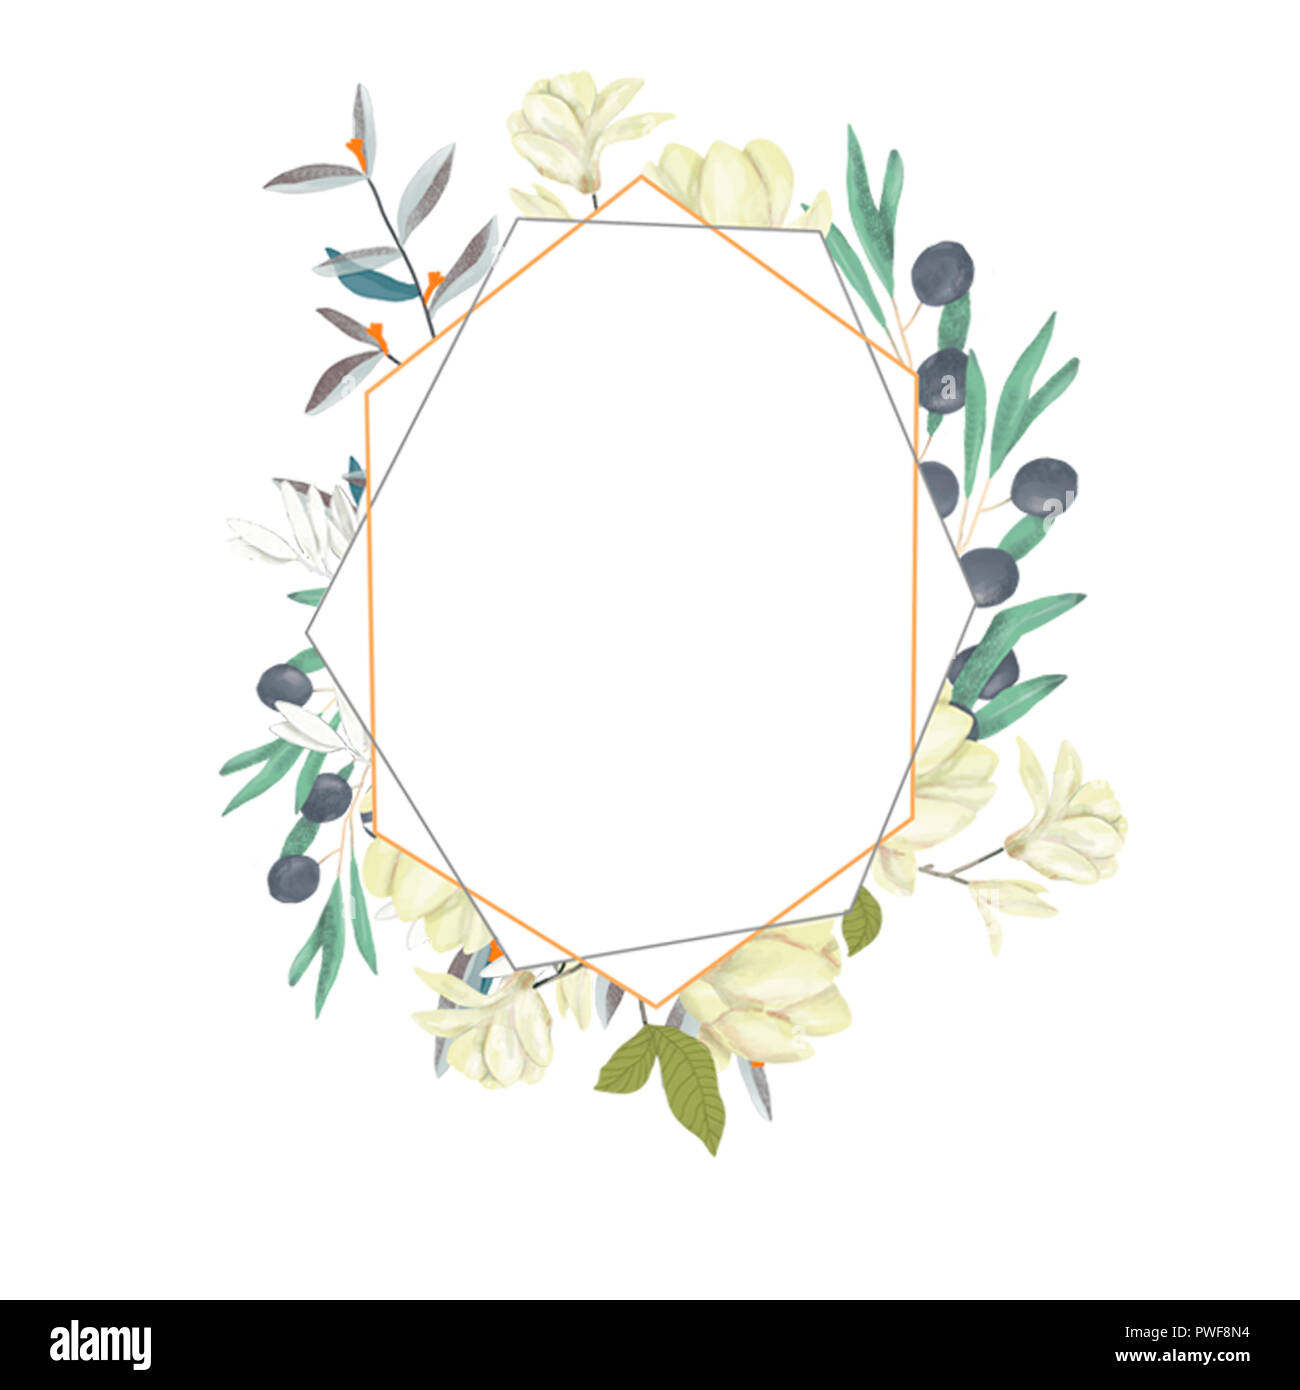 Hochzeit Einladung, floral einladen Karte, Olive floralen und Magnolia  geometrische goldene Rahmen drucken. Weißer Hintergrund Stockfotografie -  Alamy